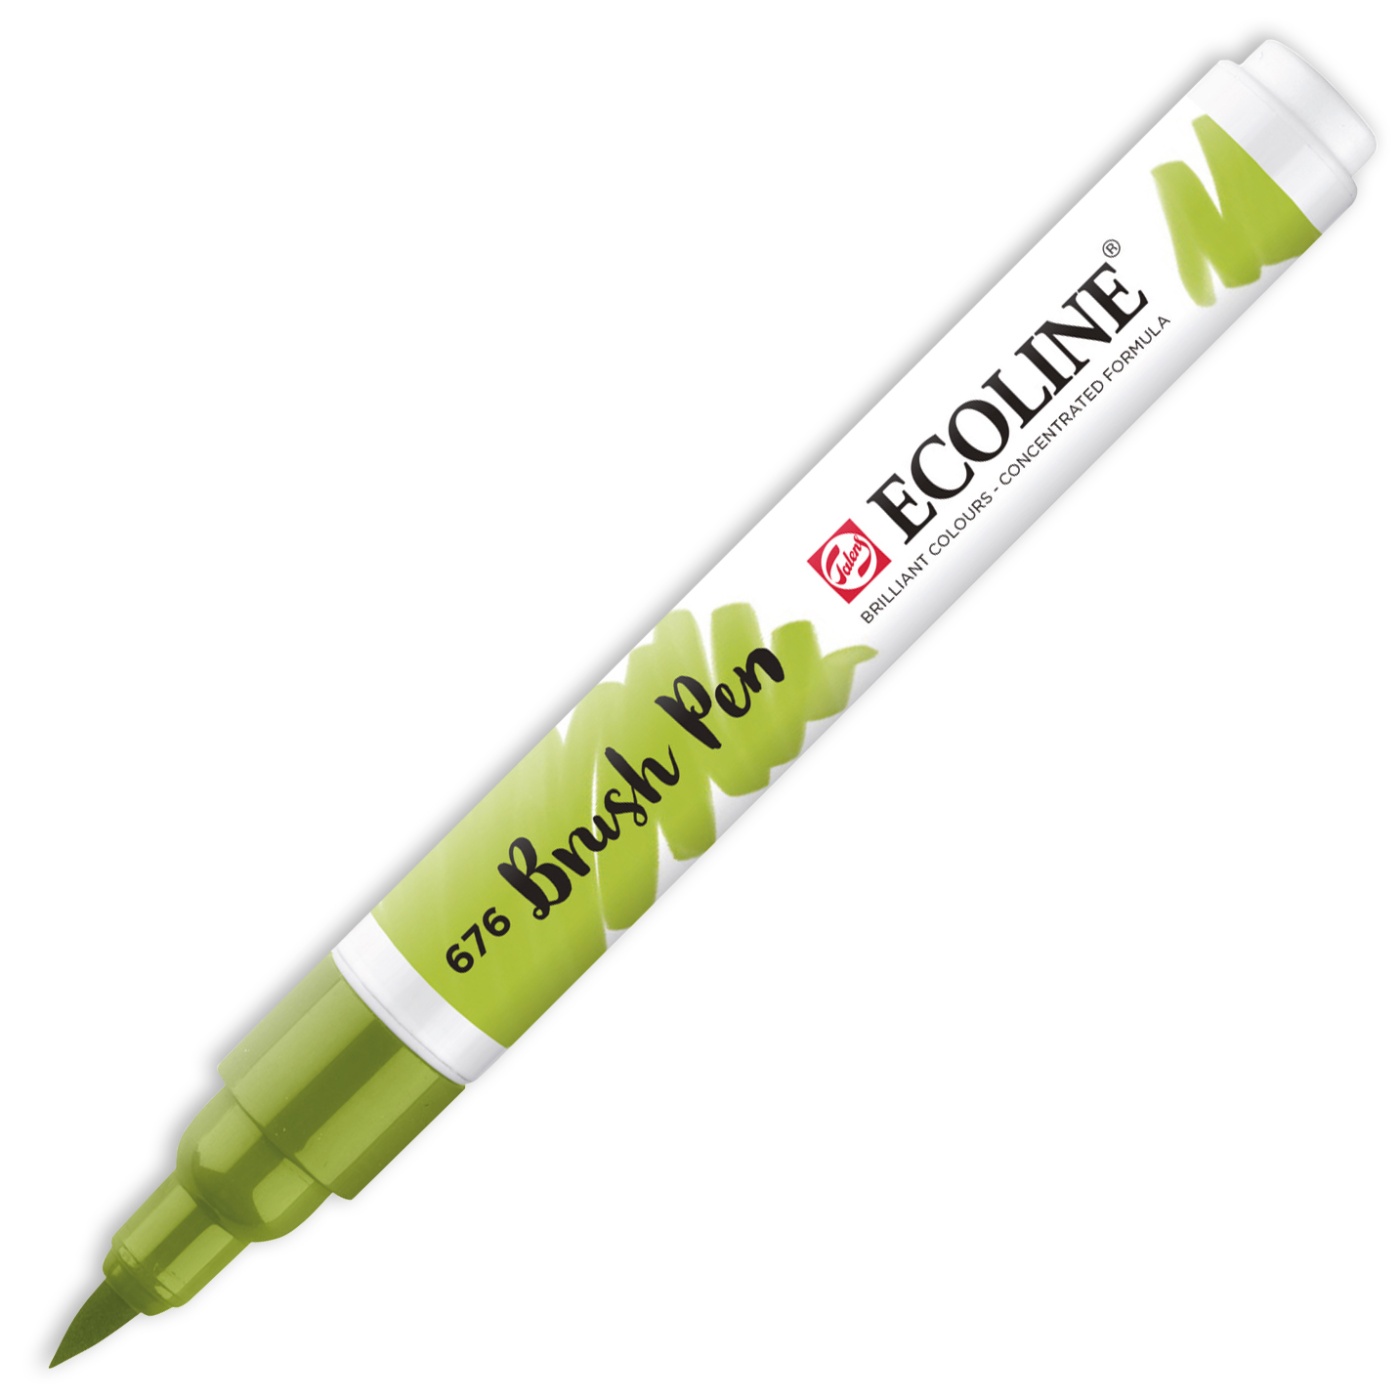 Brush Pen in the group Pens / Artist Pens / Brush Pens at Pen Store (103648_r)